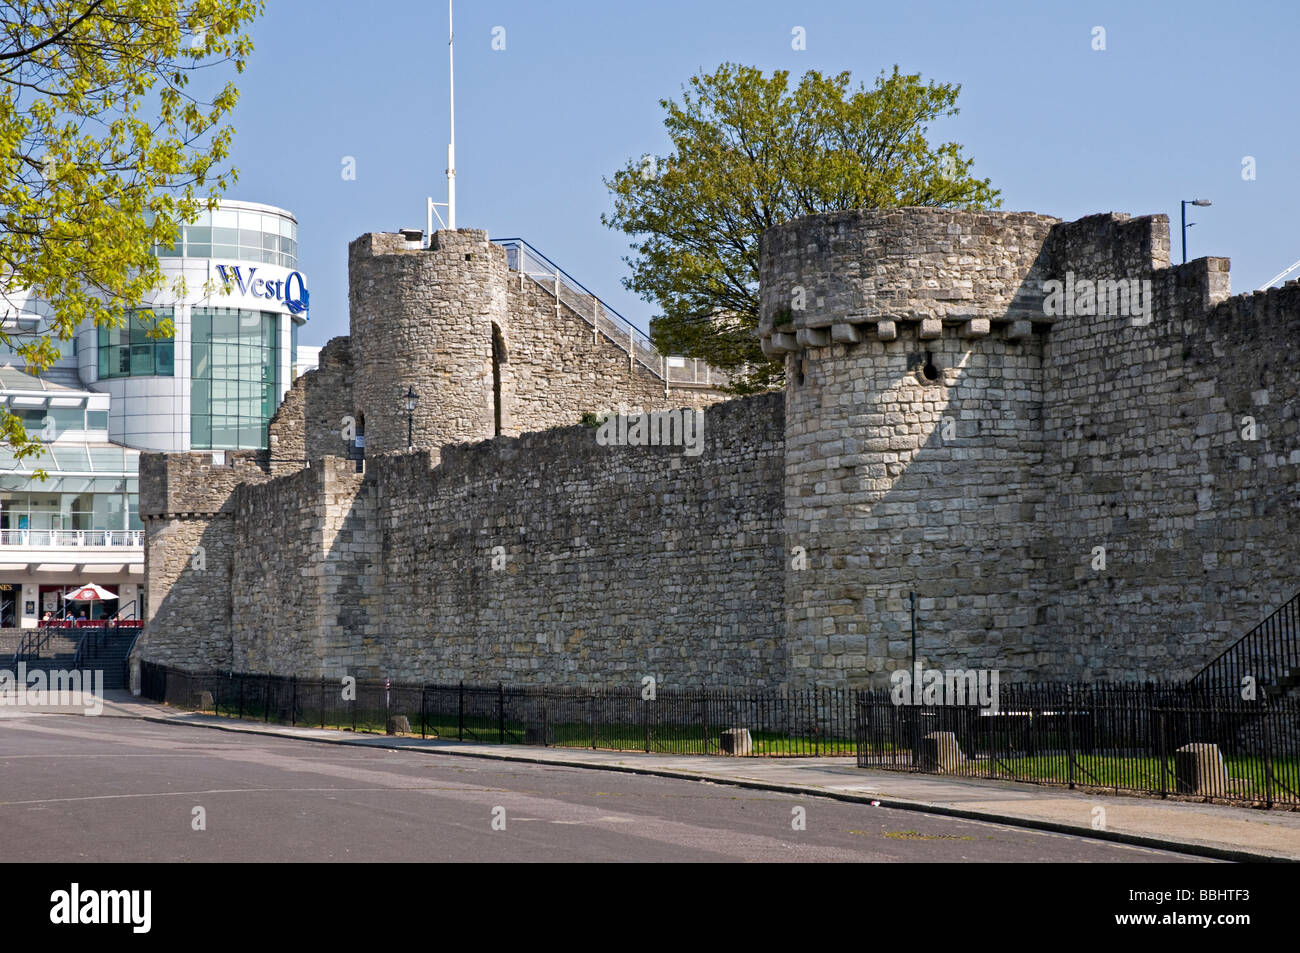 Die mittelalterlichen Mauern und Türme der Burg Southampton Kontrast mit dem modernen Stil des Einkaufszentrums Stockfoto